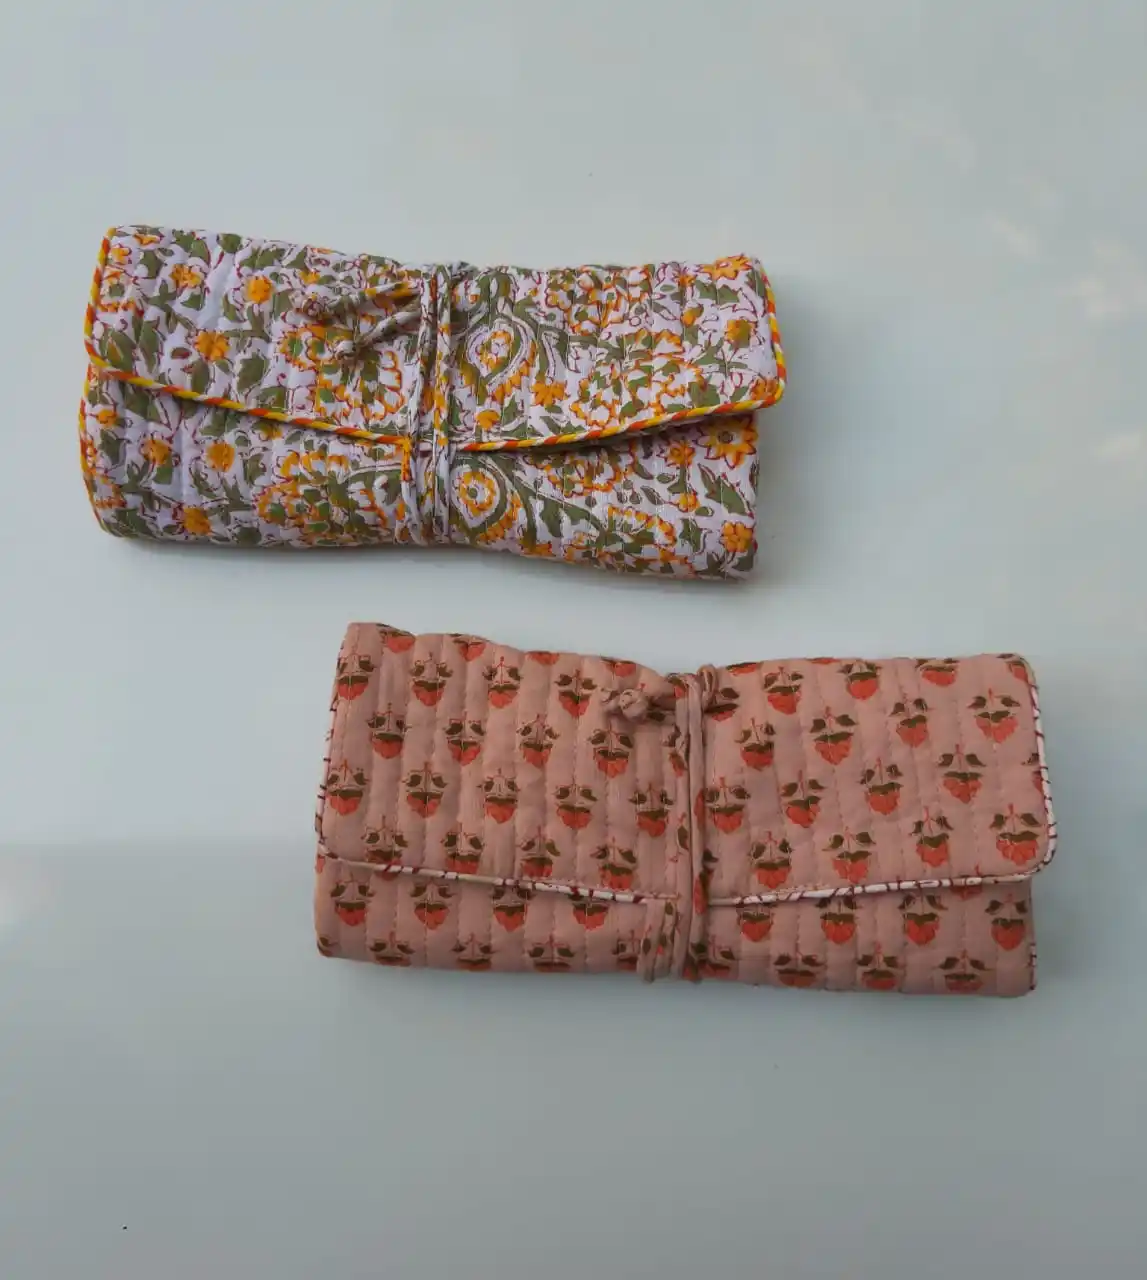 Borsa per gioielli in tessuto di cotone stampato a mano per donna, borsa con cerniera per borsa gioiello stampata a mano floreale bohemien per regalo